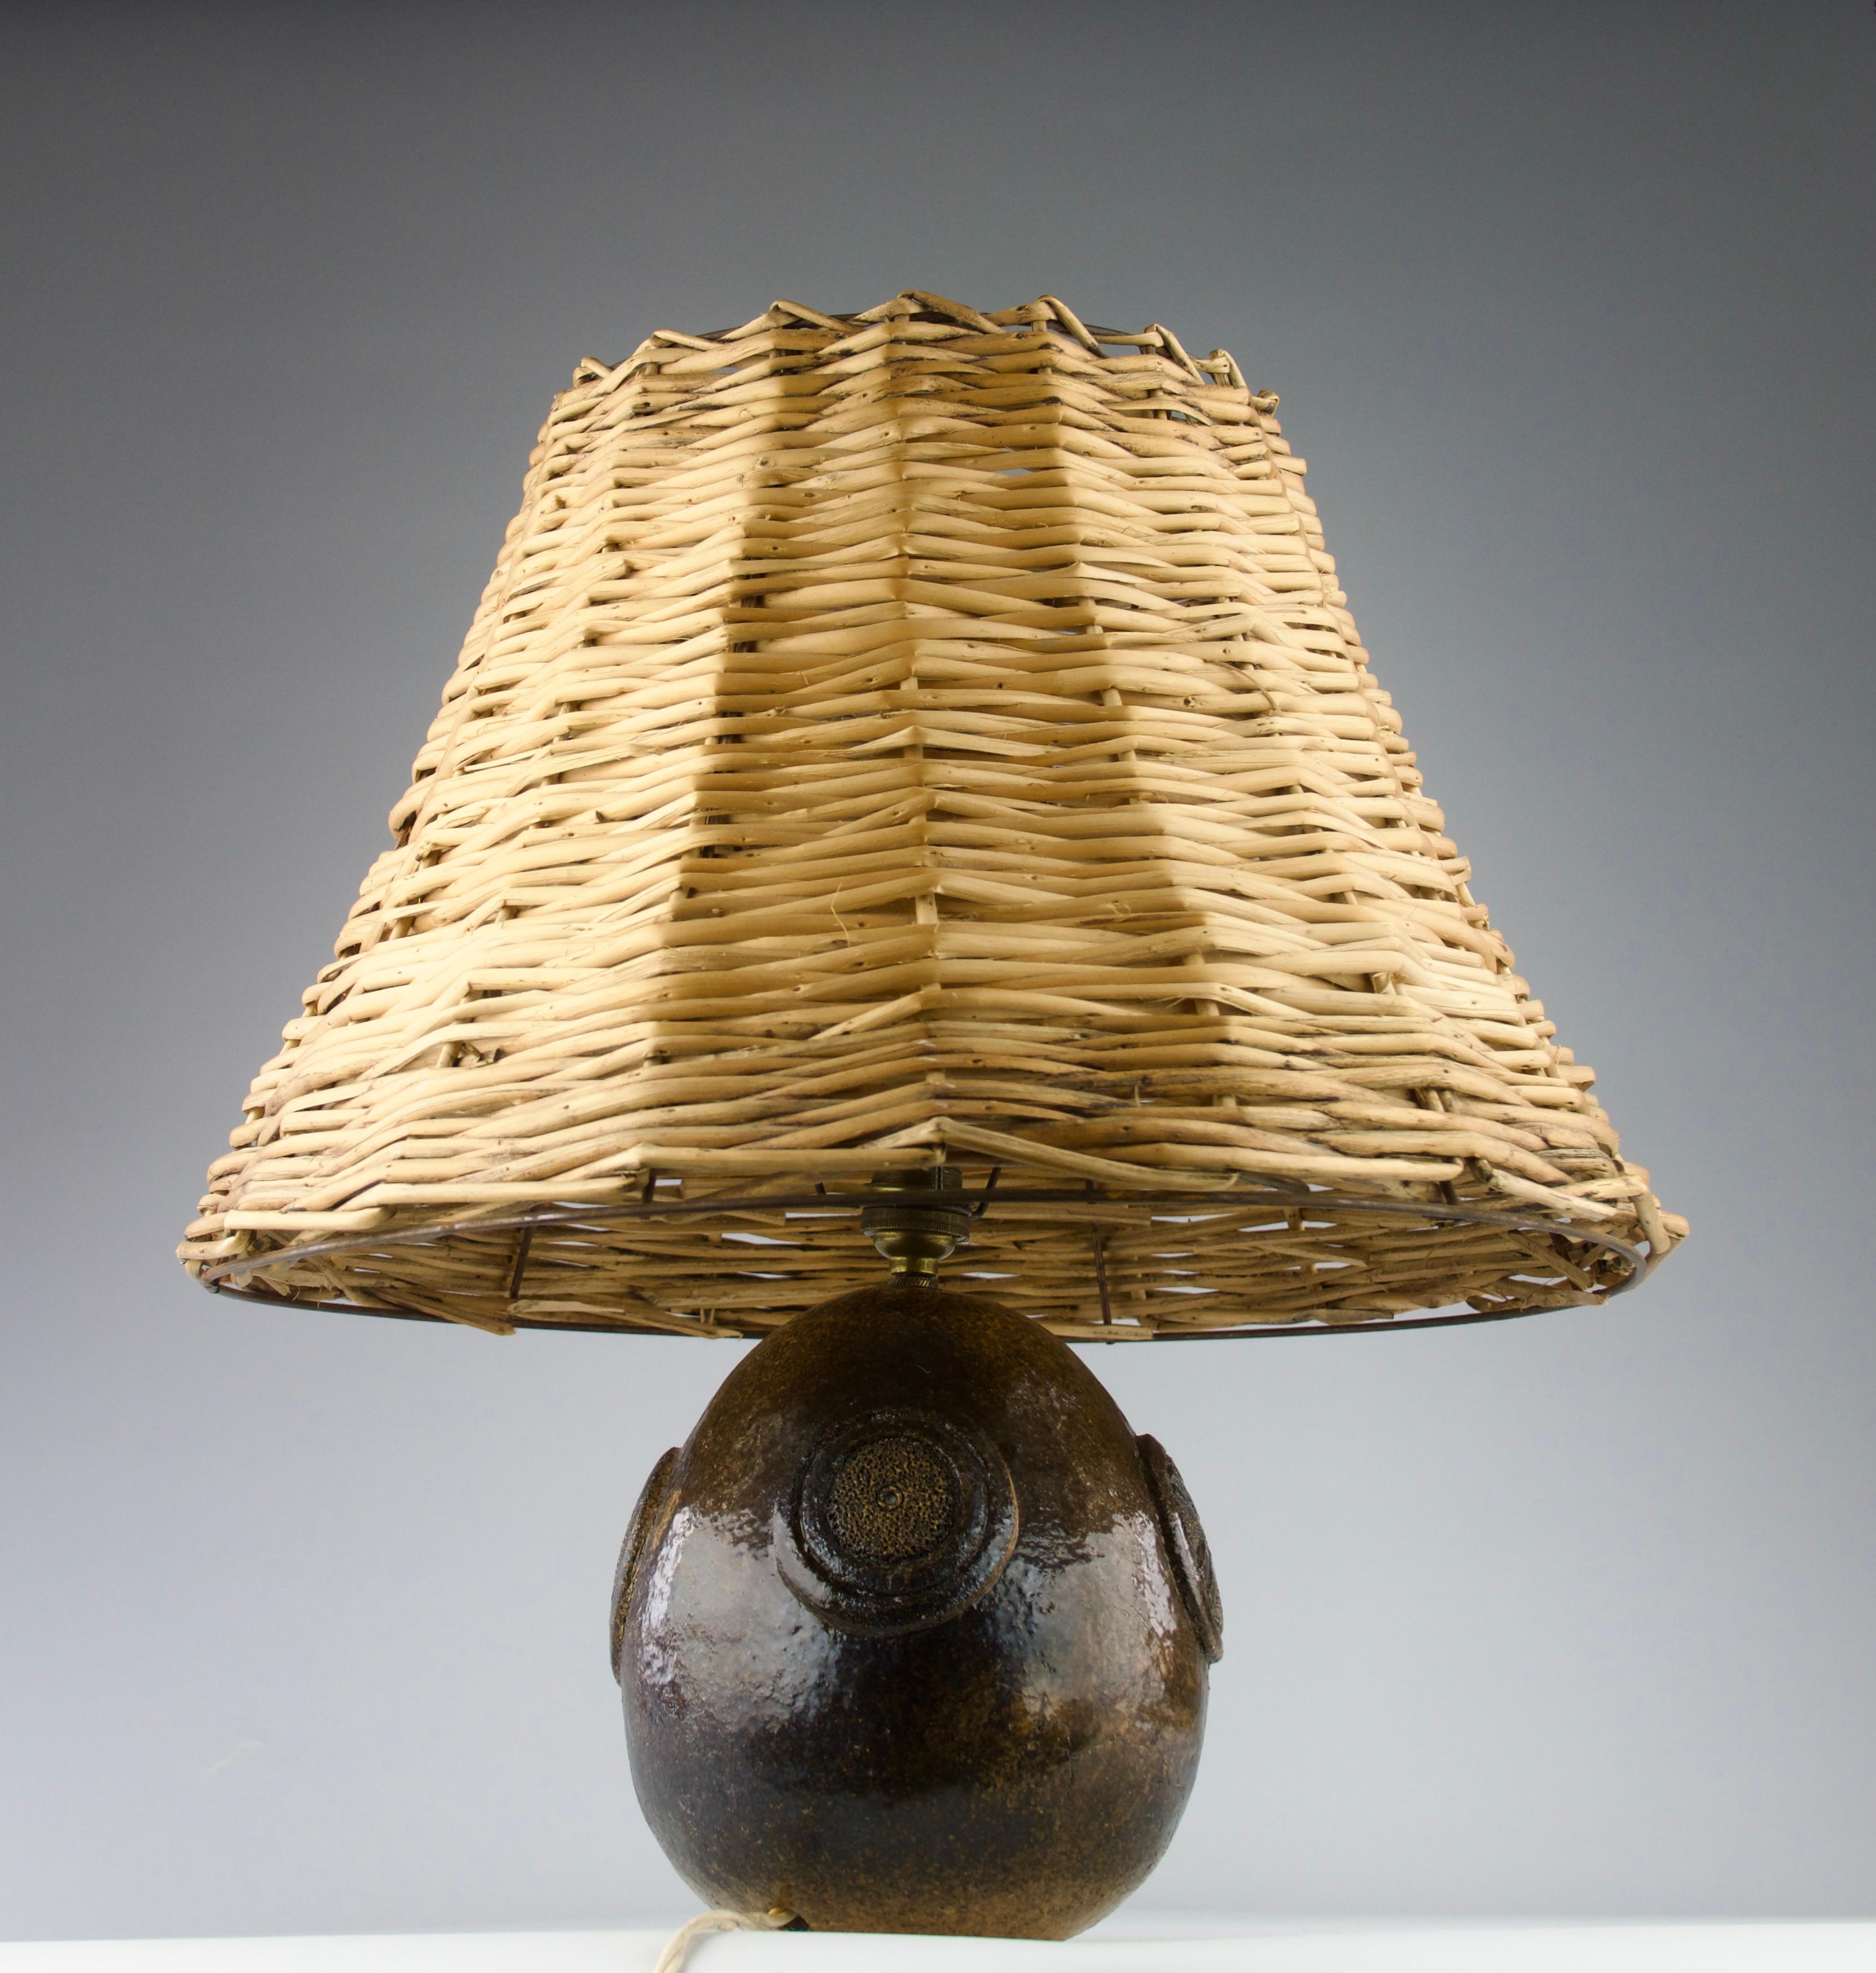 Schöne Tischlampe aus Keramik mit geometrischen Motiven und einem Lampenschirm aus Rattan, Frankreich 1950er Jahre.

Ausgezeichneter Zustand.

Abmessungen in cm ( H x T ) : 44 x 40.5
Abmessungen des Keramiksockels in cm ( H x T) : 17 x 15, mit der